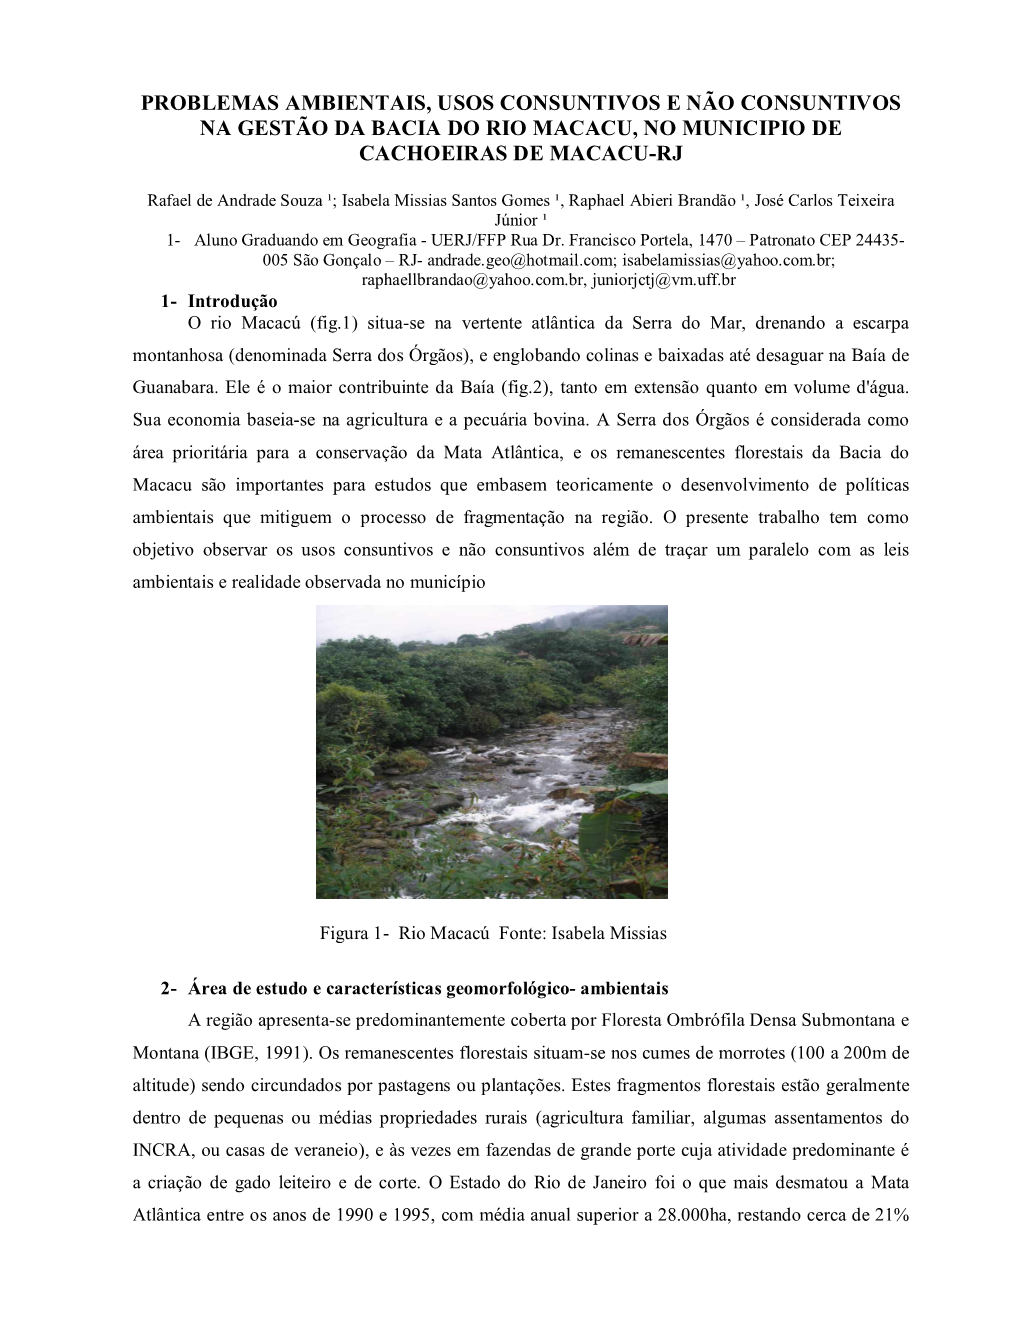 Problemas Ambientais, Usos Consuntivos E Não Consuntivos Na Gestão Da Bacia Do Rio Macacu, No Municipio De Cachoeiras De Macacu-Rj